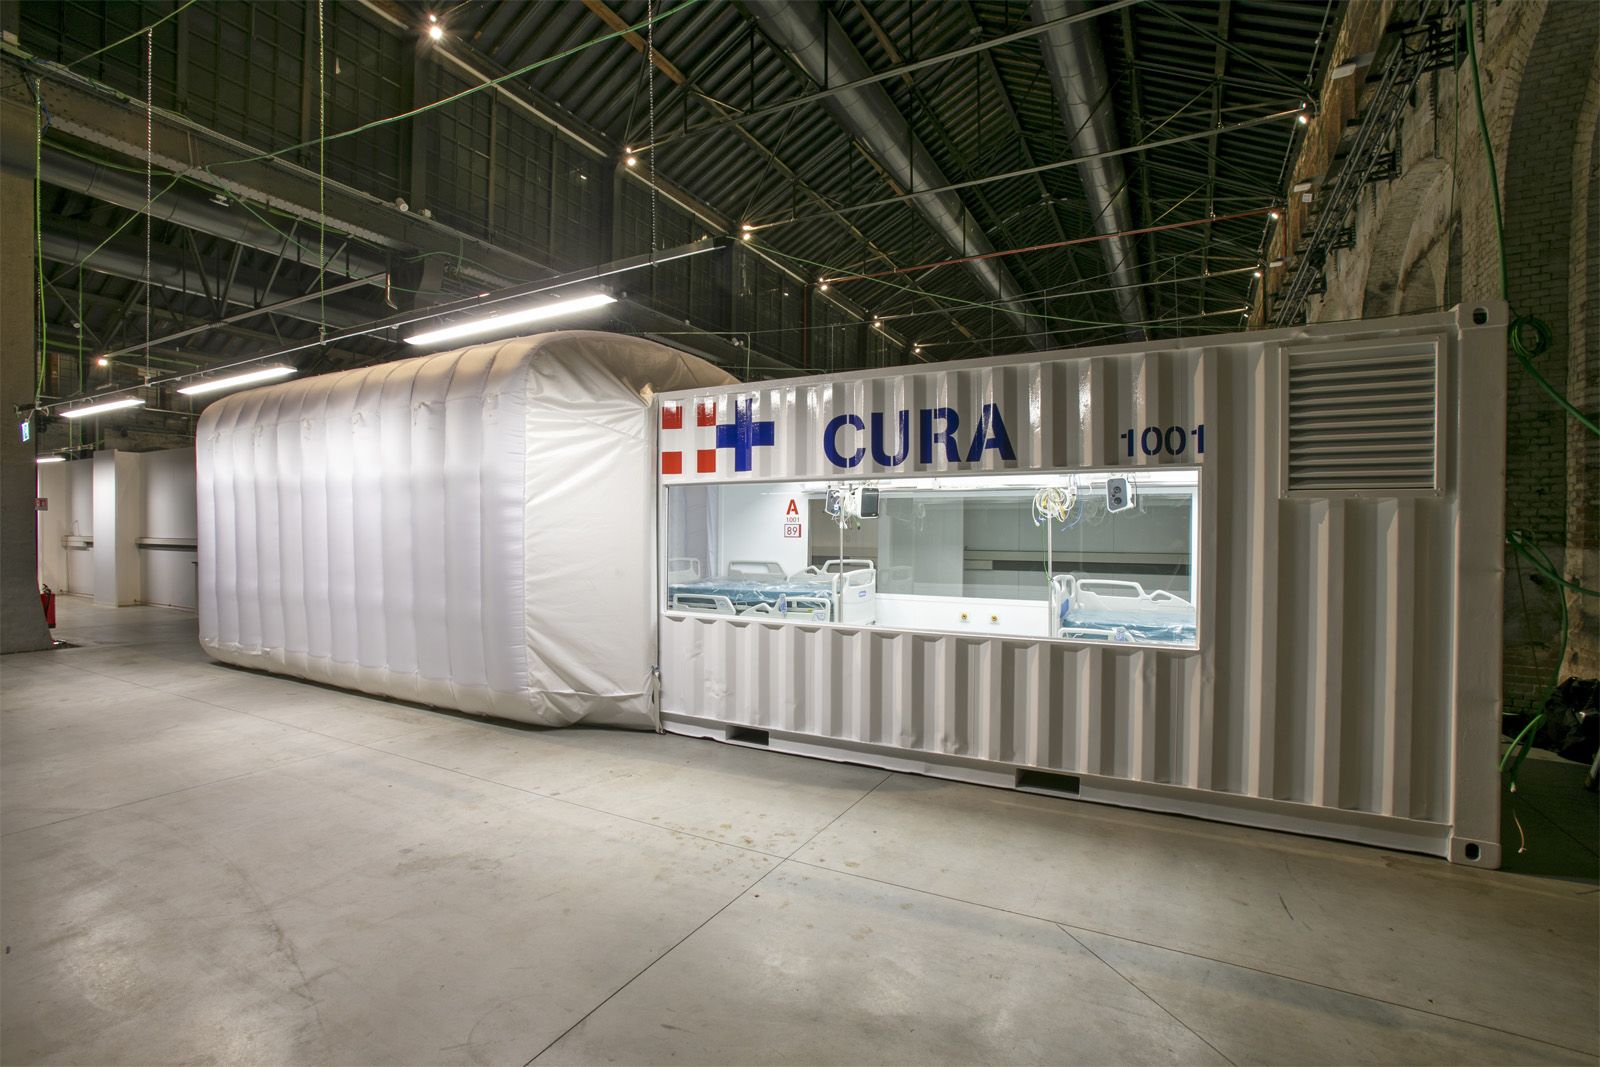 連結拡張できるコンテナハウス式 ICU「CURA」。新形コロナへの対応でUAE、カナダにも導入へ